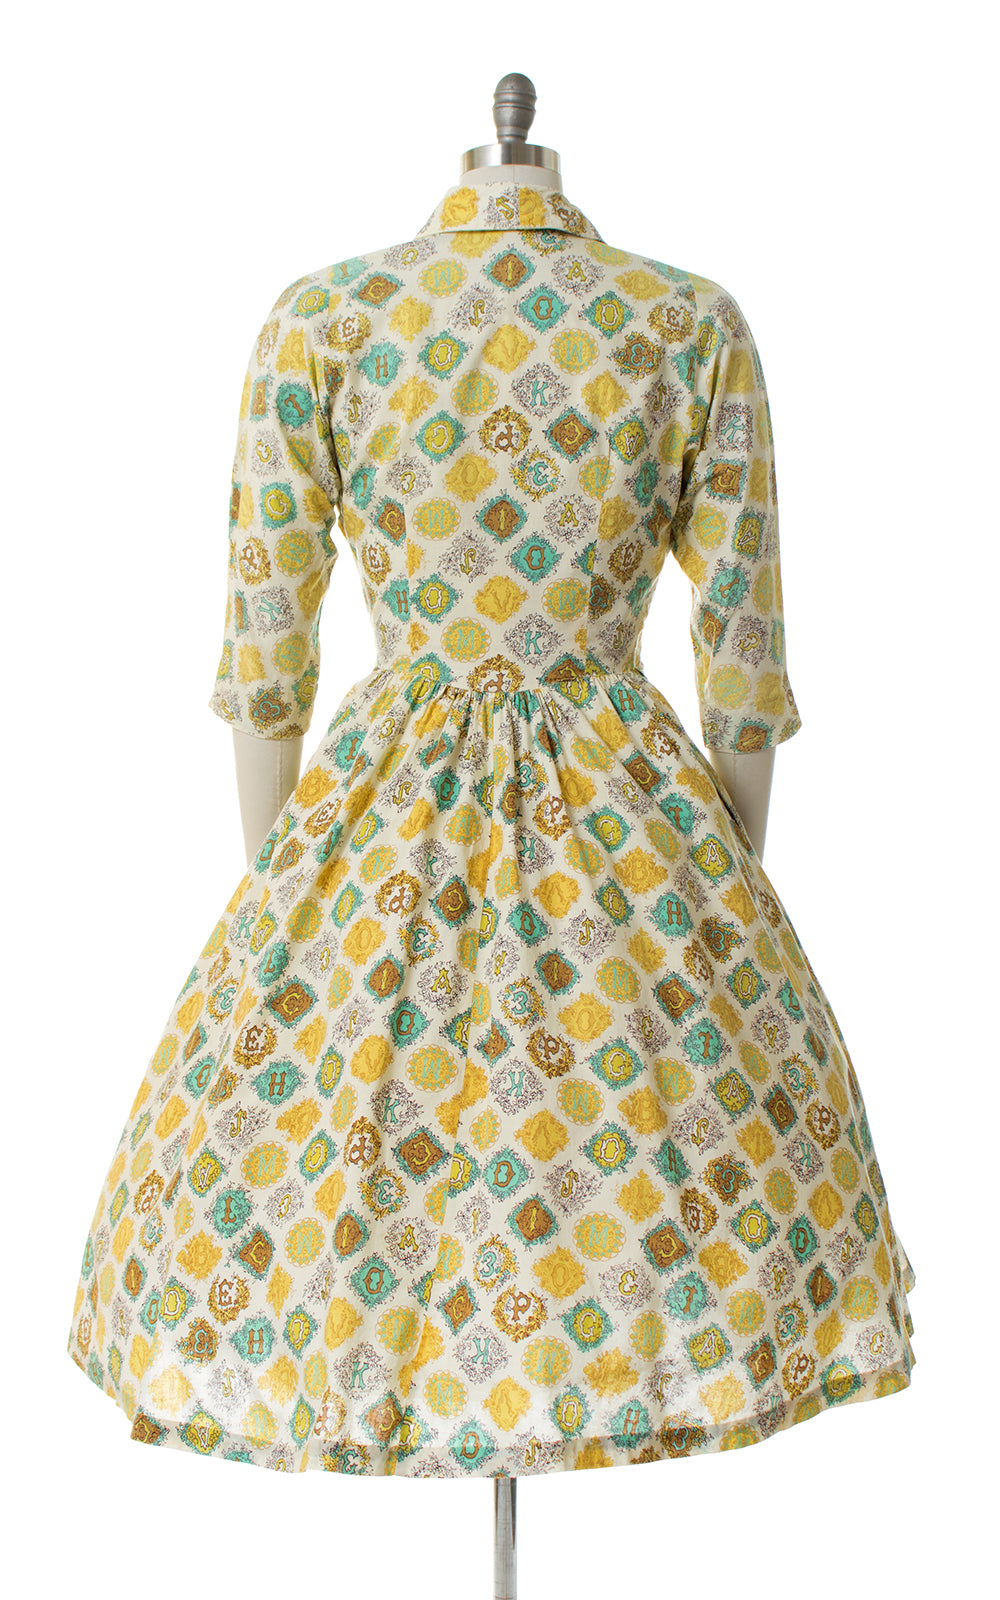 1950s ABCs novelty print wrap dress